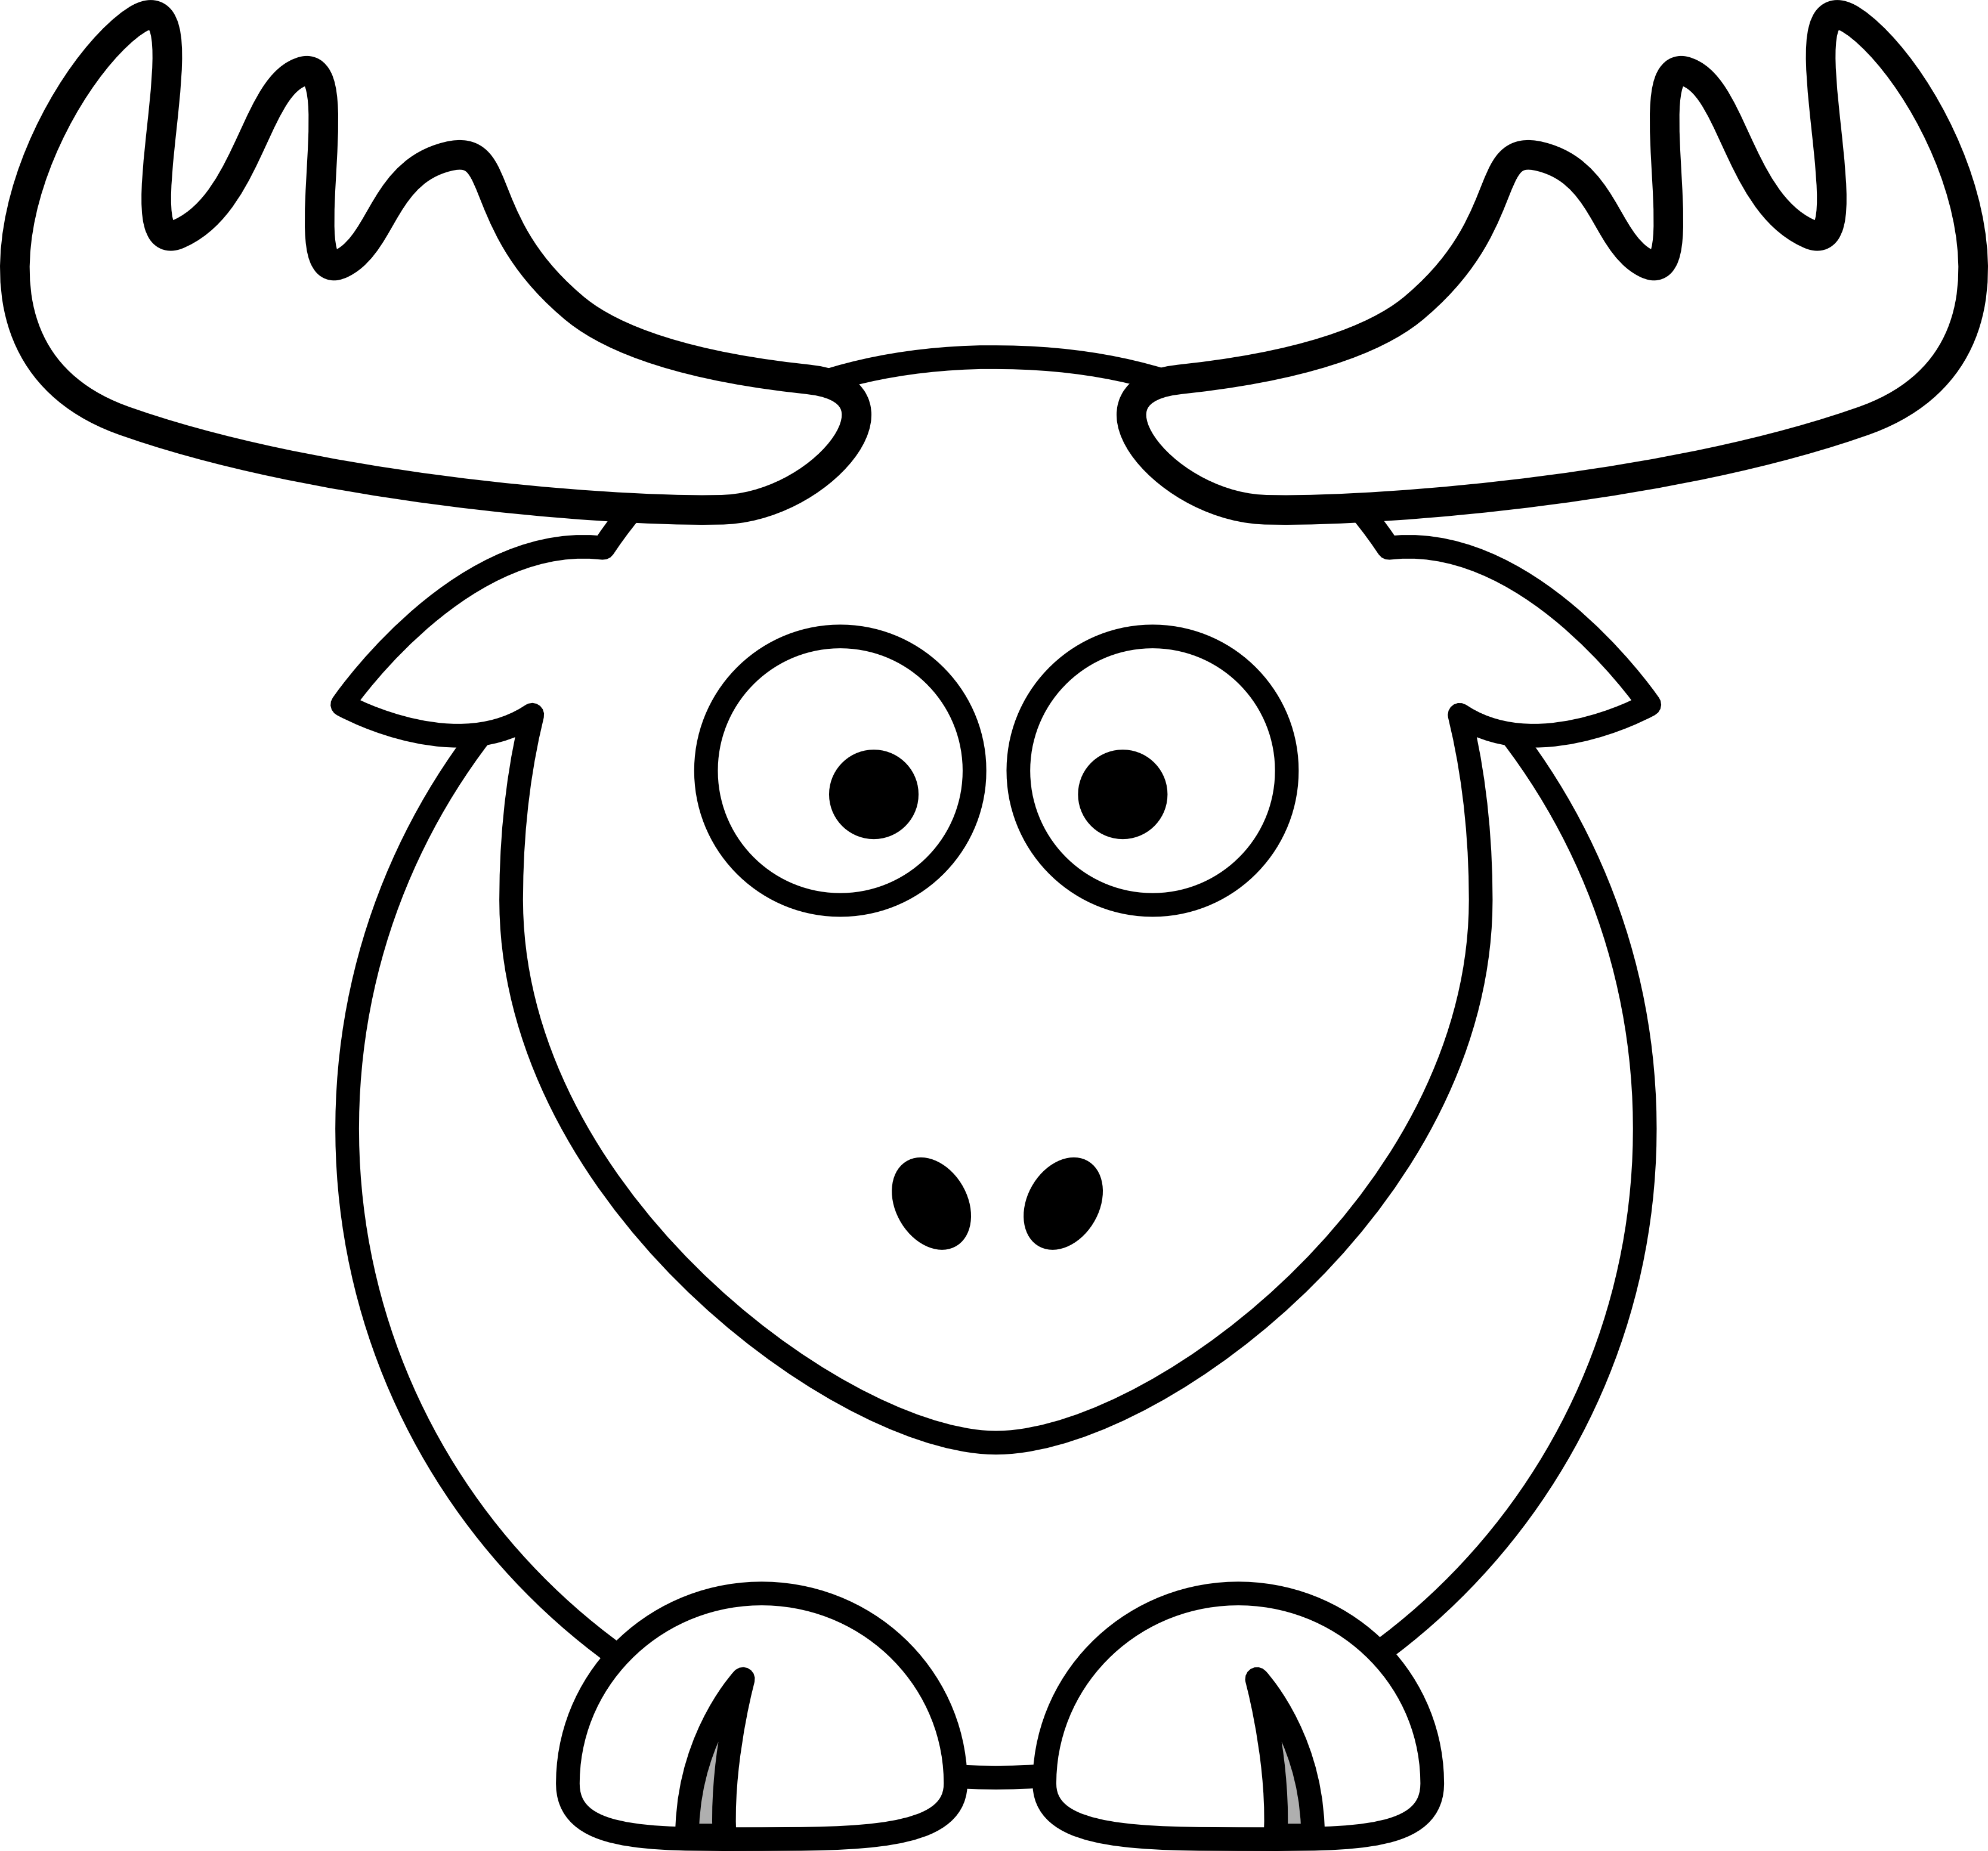 reindeer raindeer elk black white line art ... - ClipArt Best ...